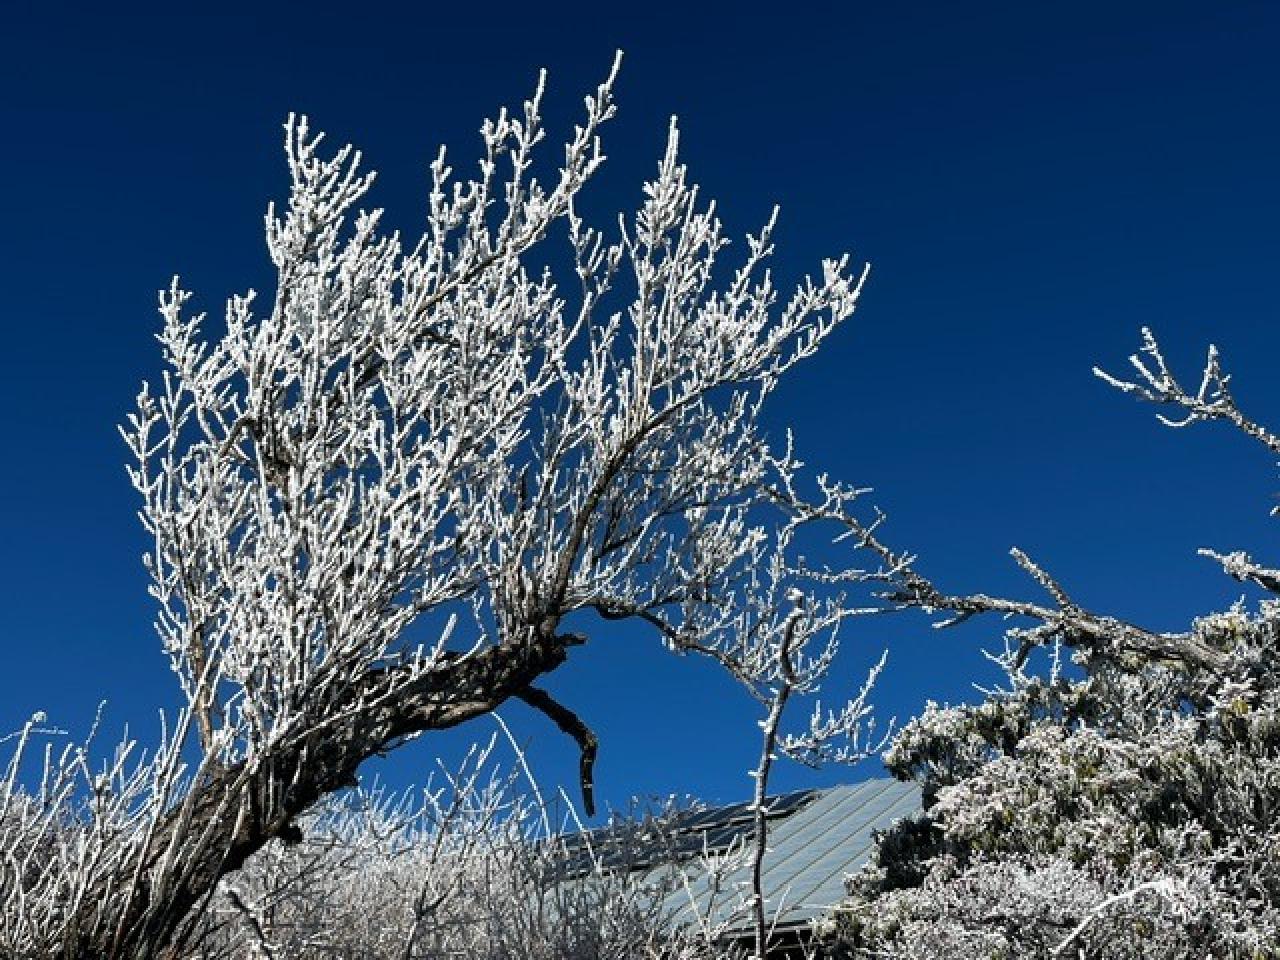 キンと冷たく青く澄み渡った空に木々の霧氷が映えます。